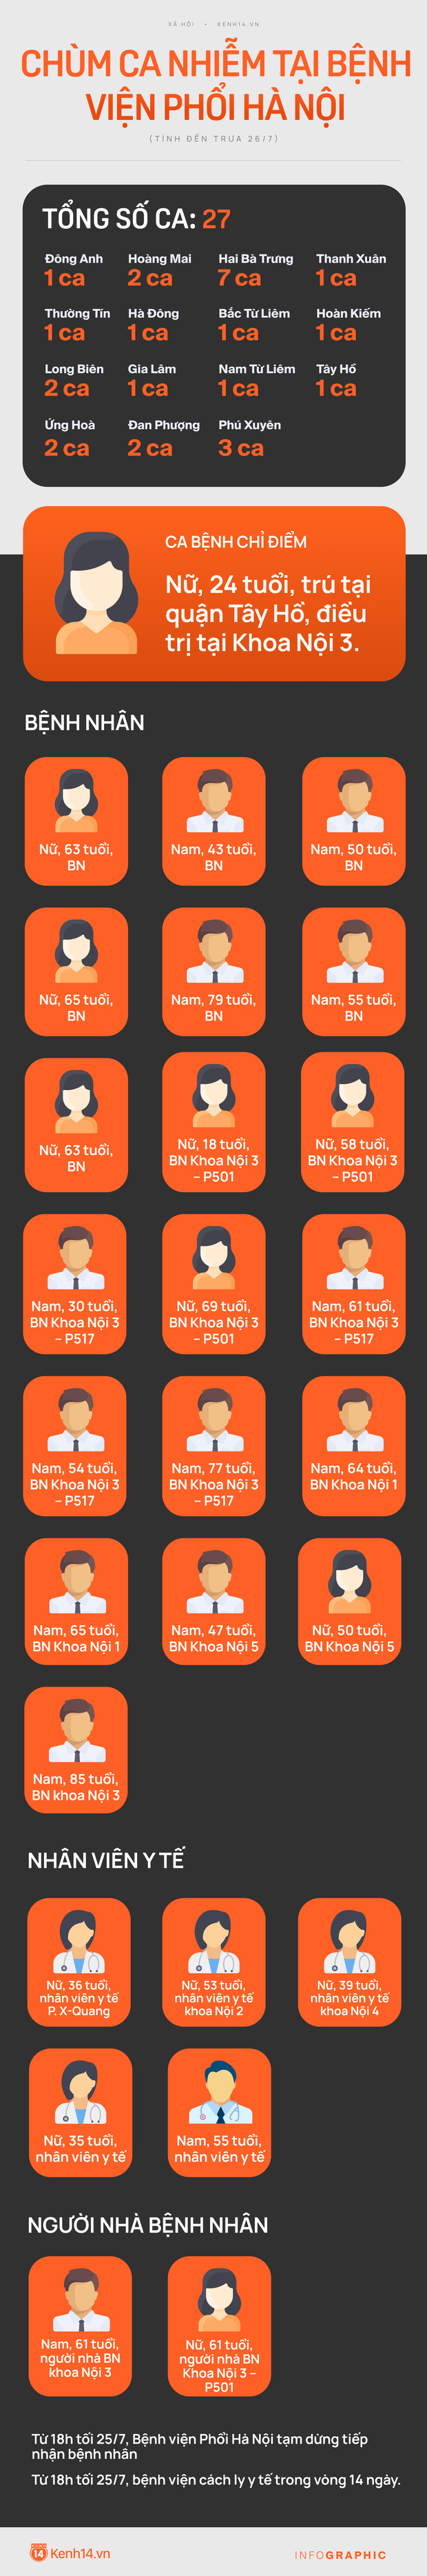  INFOGRAPHIC: 27 ca nhiễm liên quan Bệnh viện Phổi Hà Nội, phong toả toàn bộ bệnh viện - Ảnh 1.